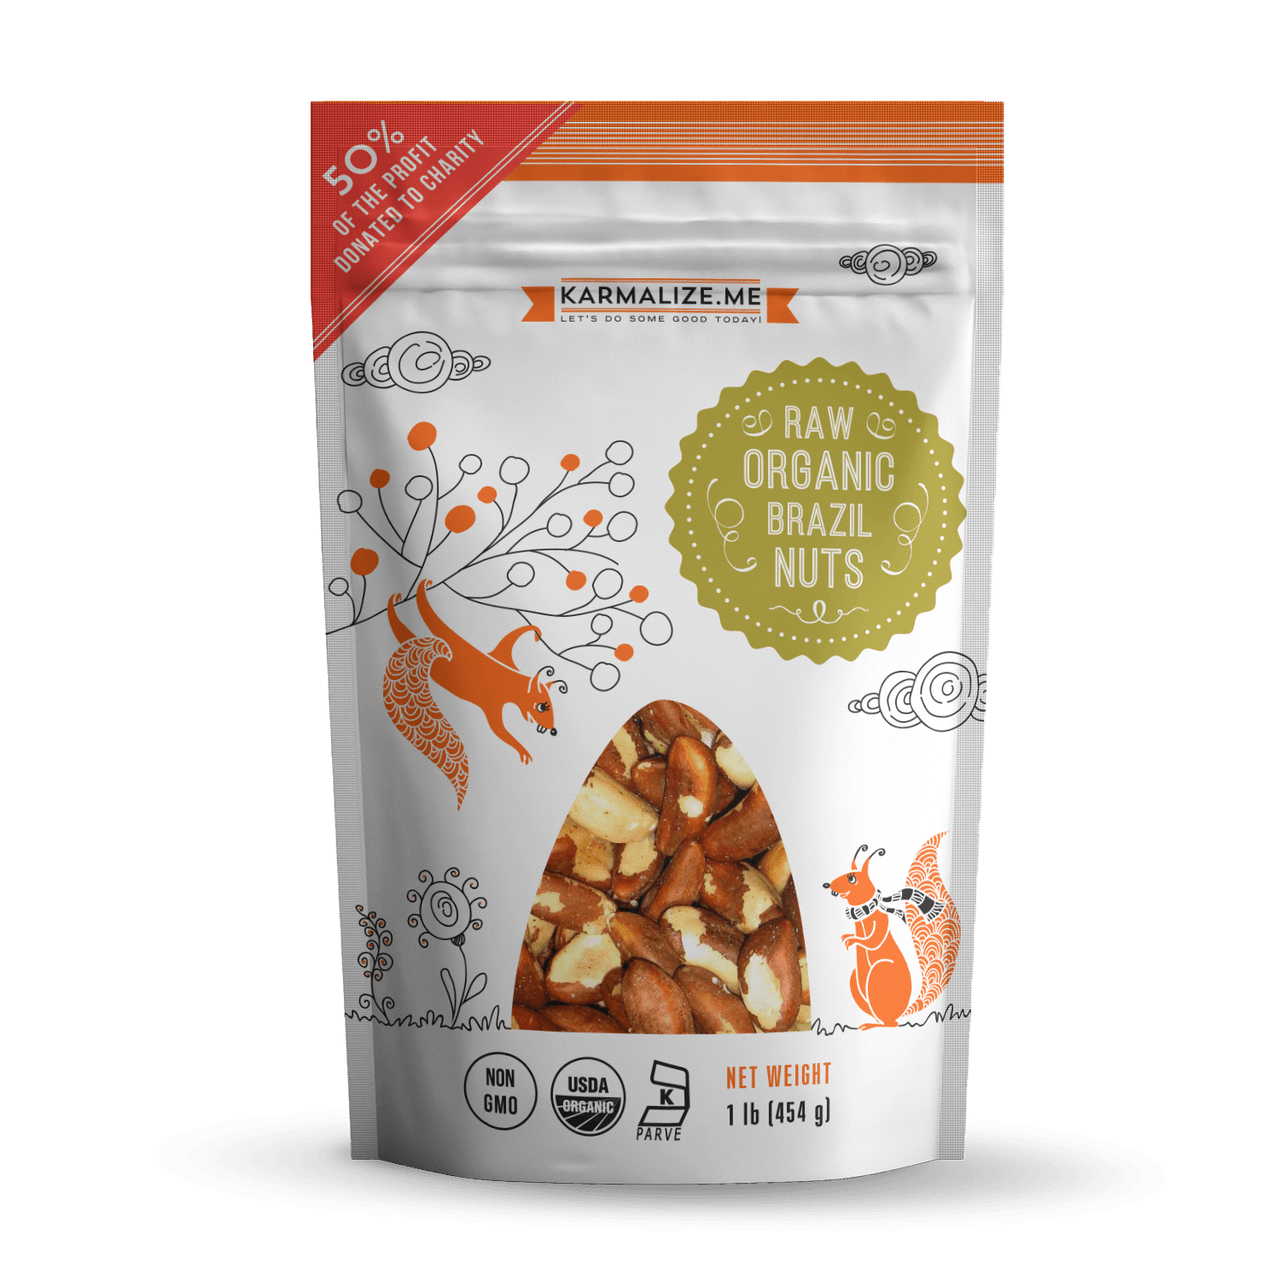 Organic Brazil Nuts.